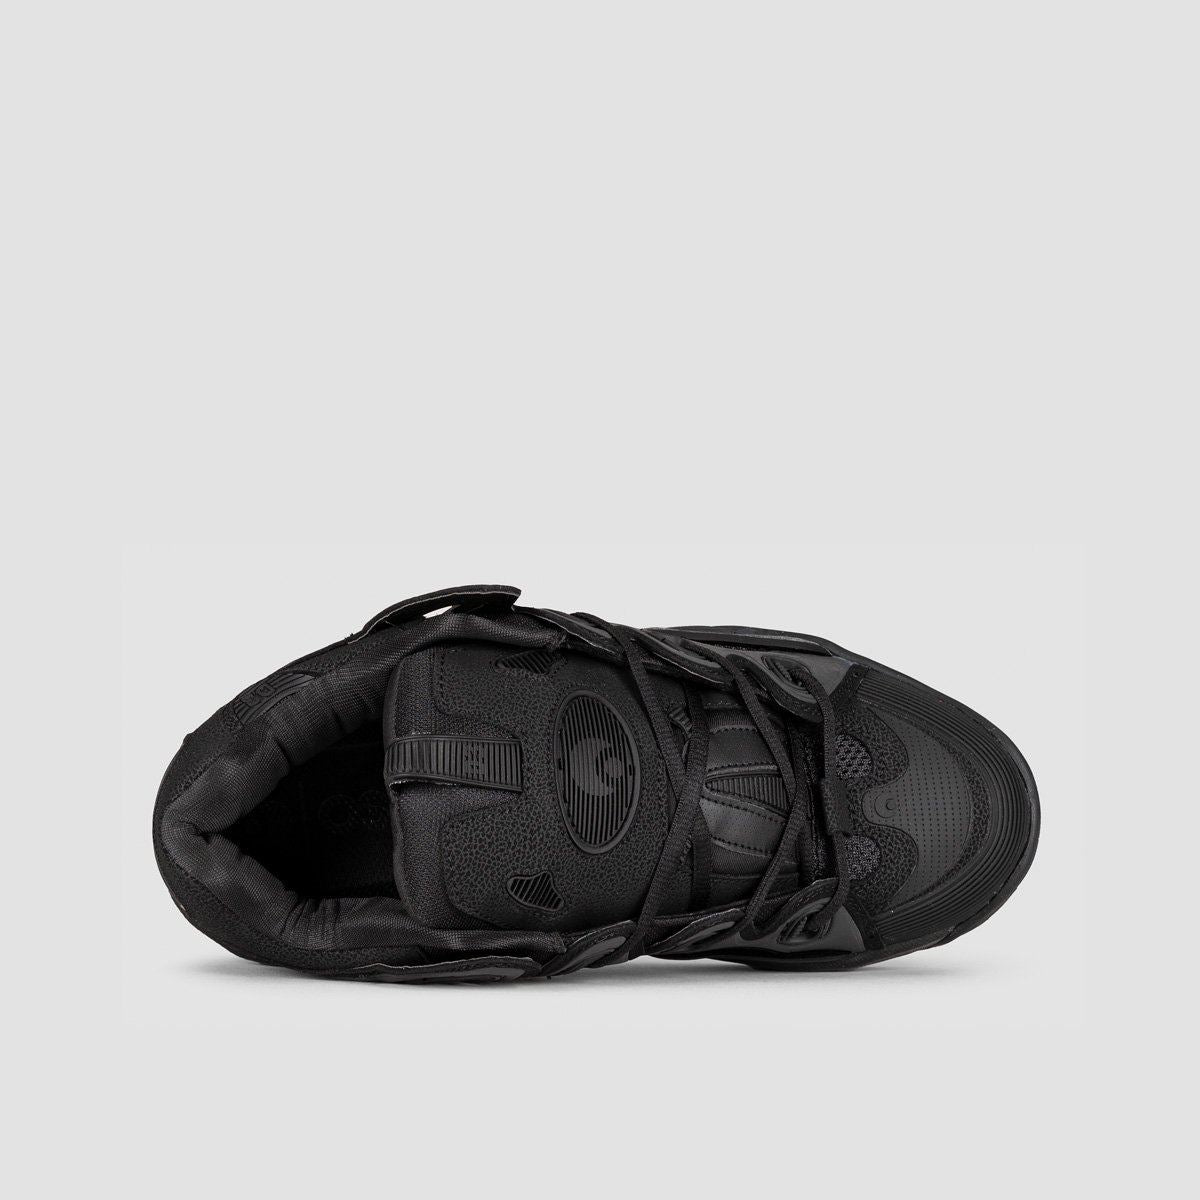 Osiris D3 2001 Shoes - Black/Black/Black